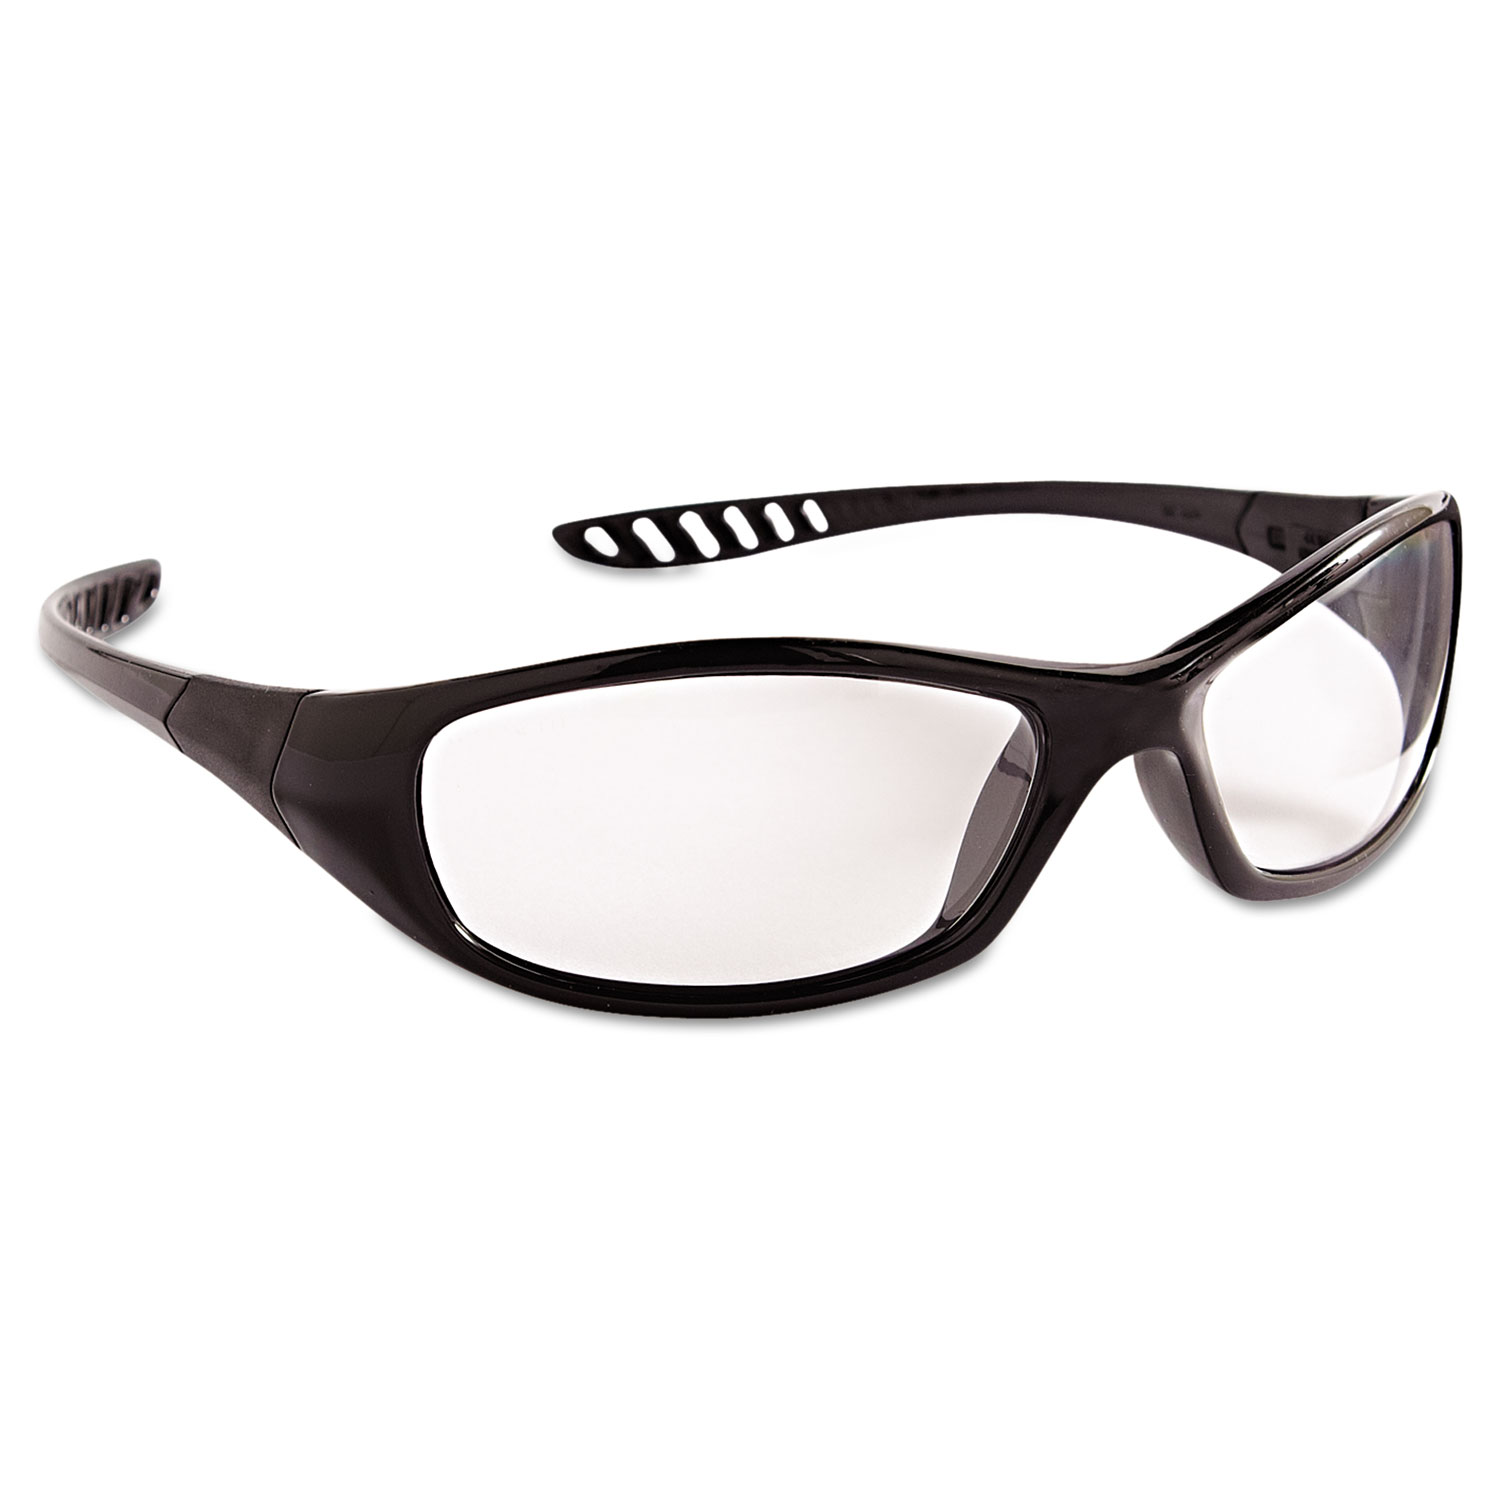  KleenGuard 28615 V40 HellRaiser Safety Glasses, Black Frame, Clear Anti-Fog Lens (KCC28615) 